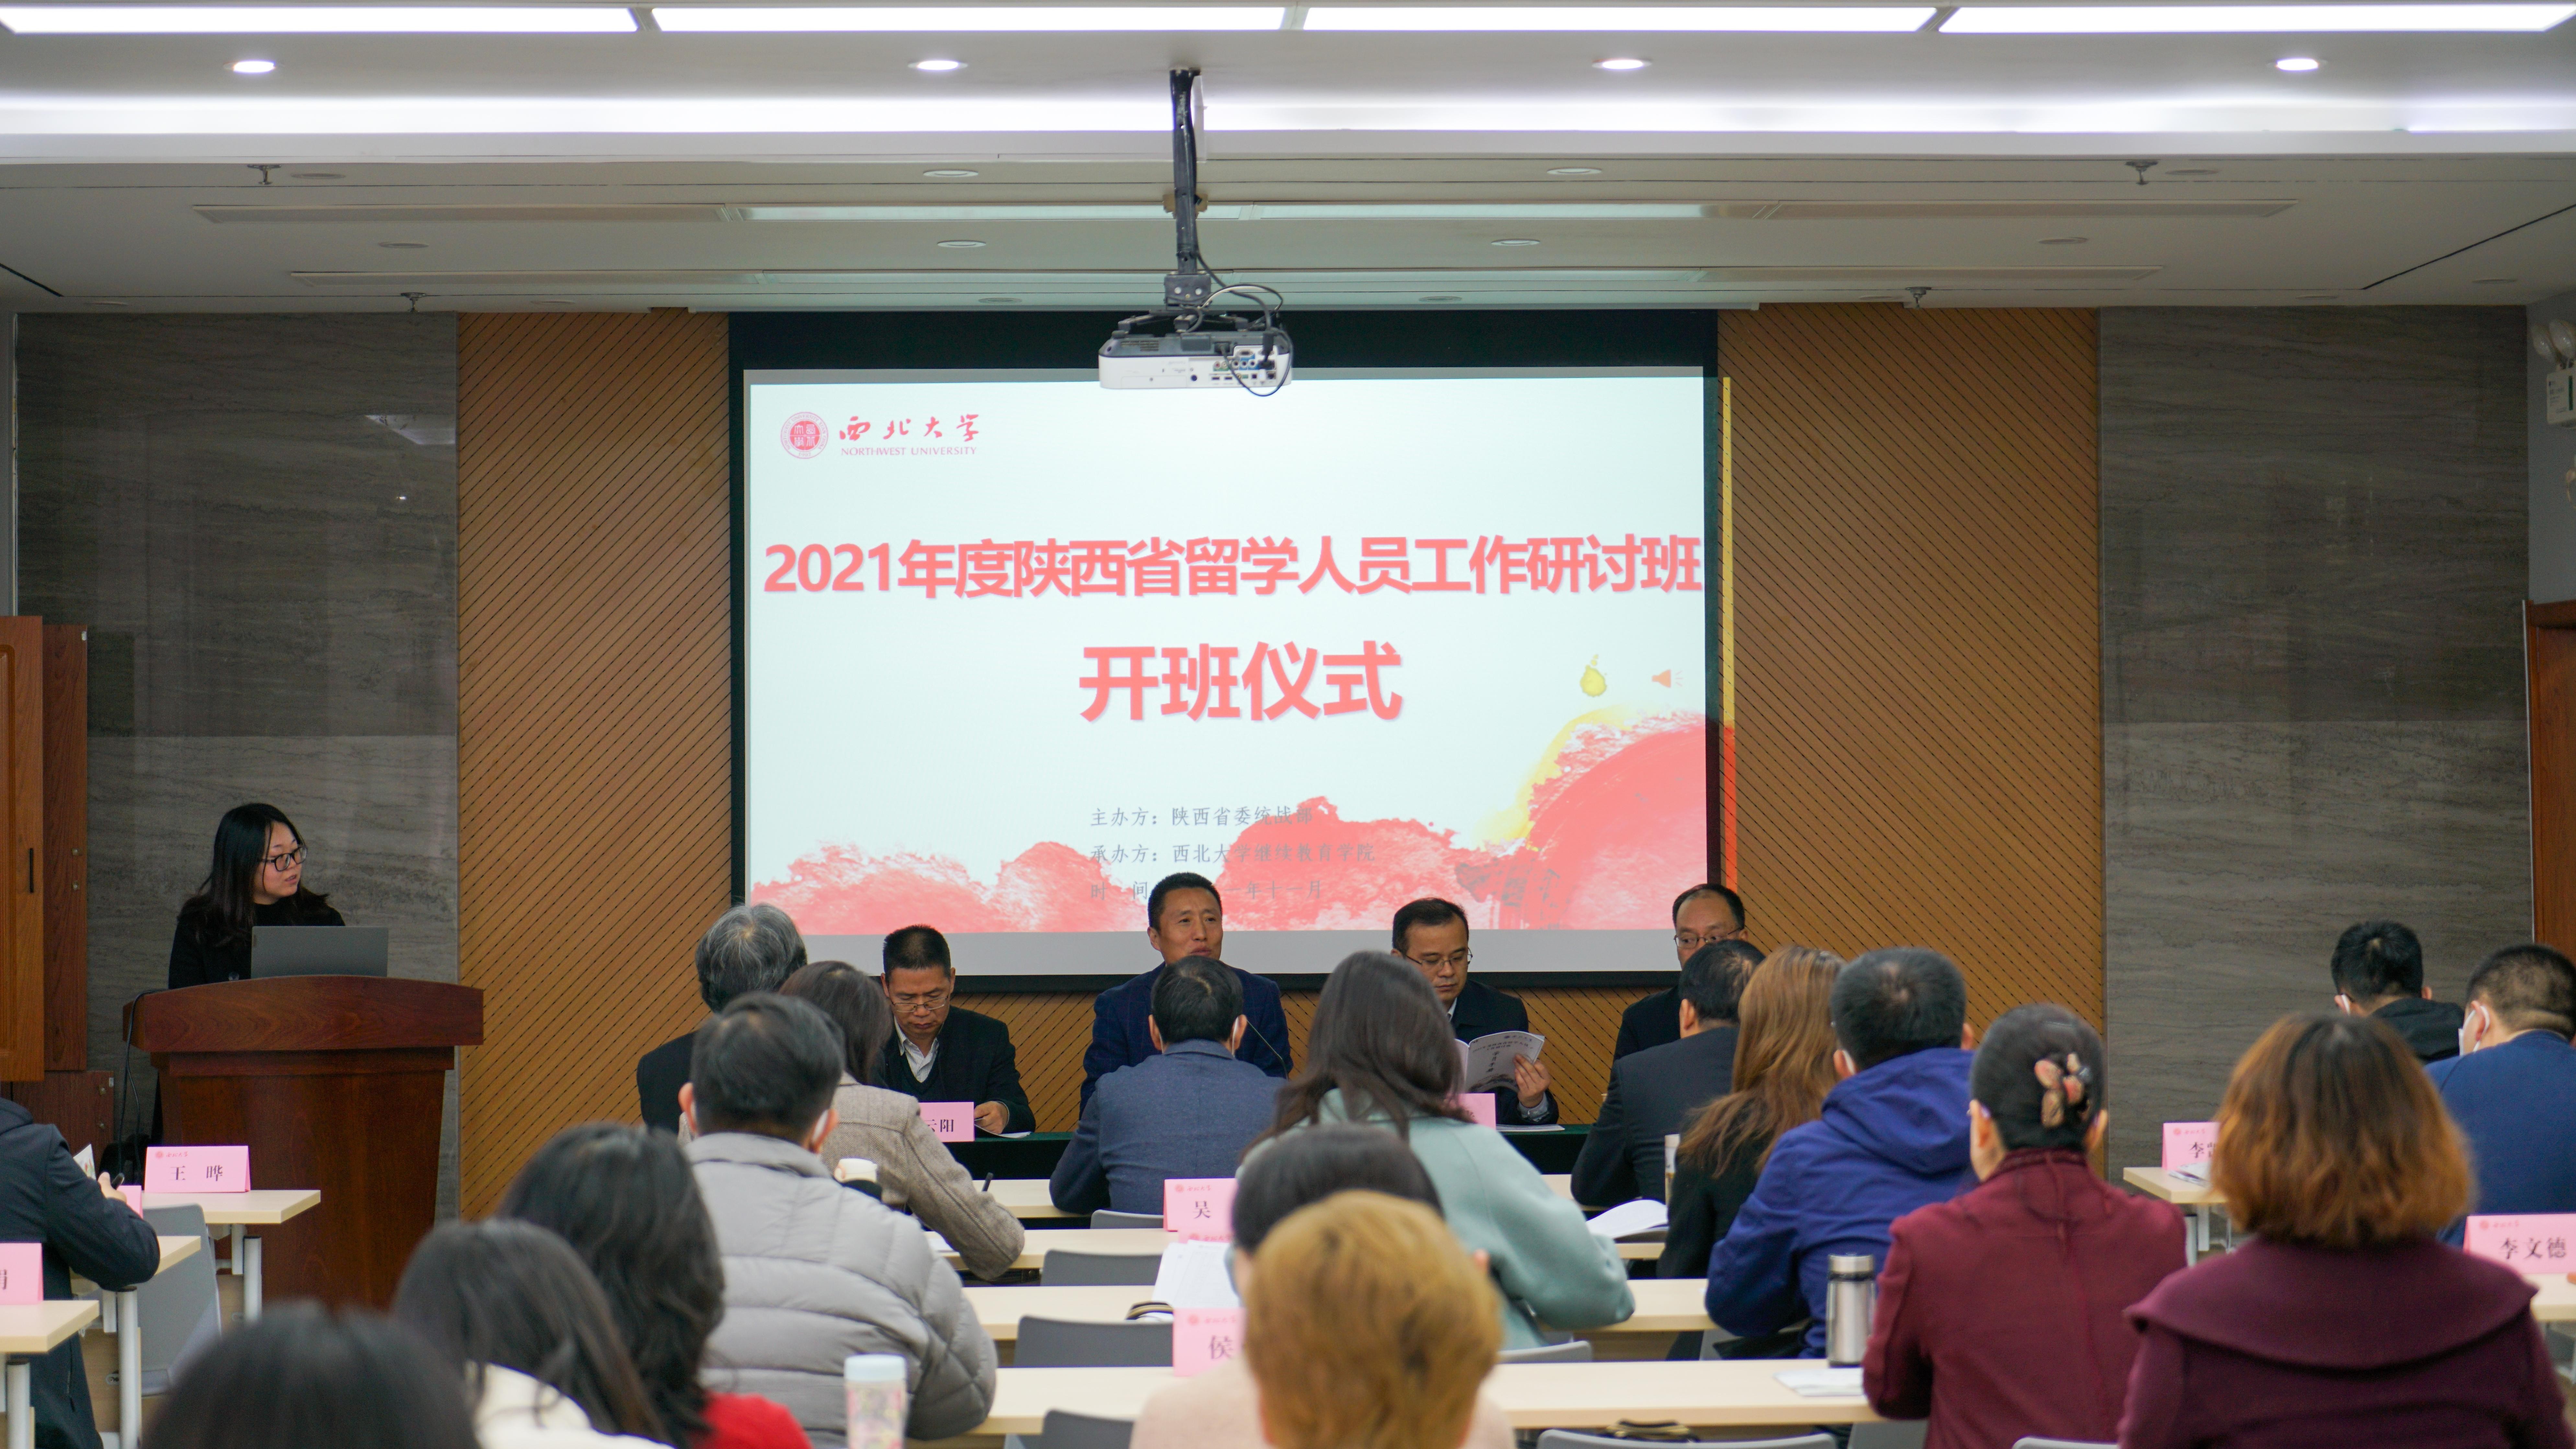 2021年度陕西省留学人员工作研讨班在我院成功举办